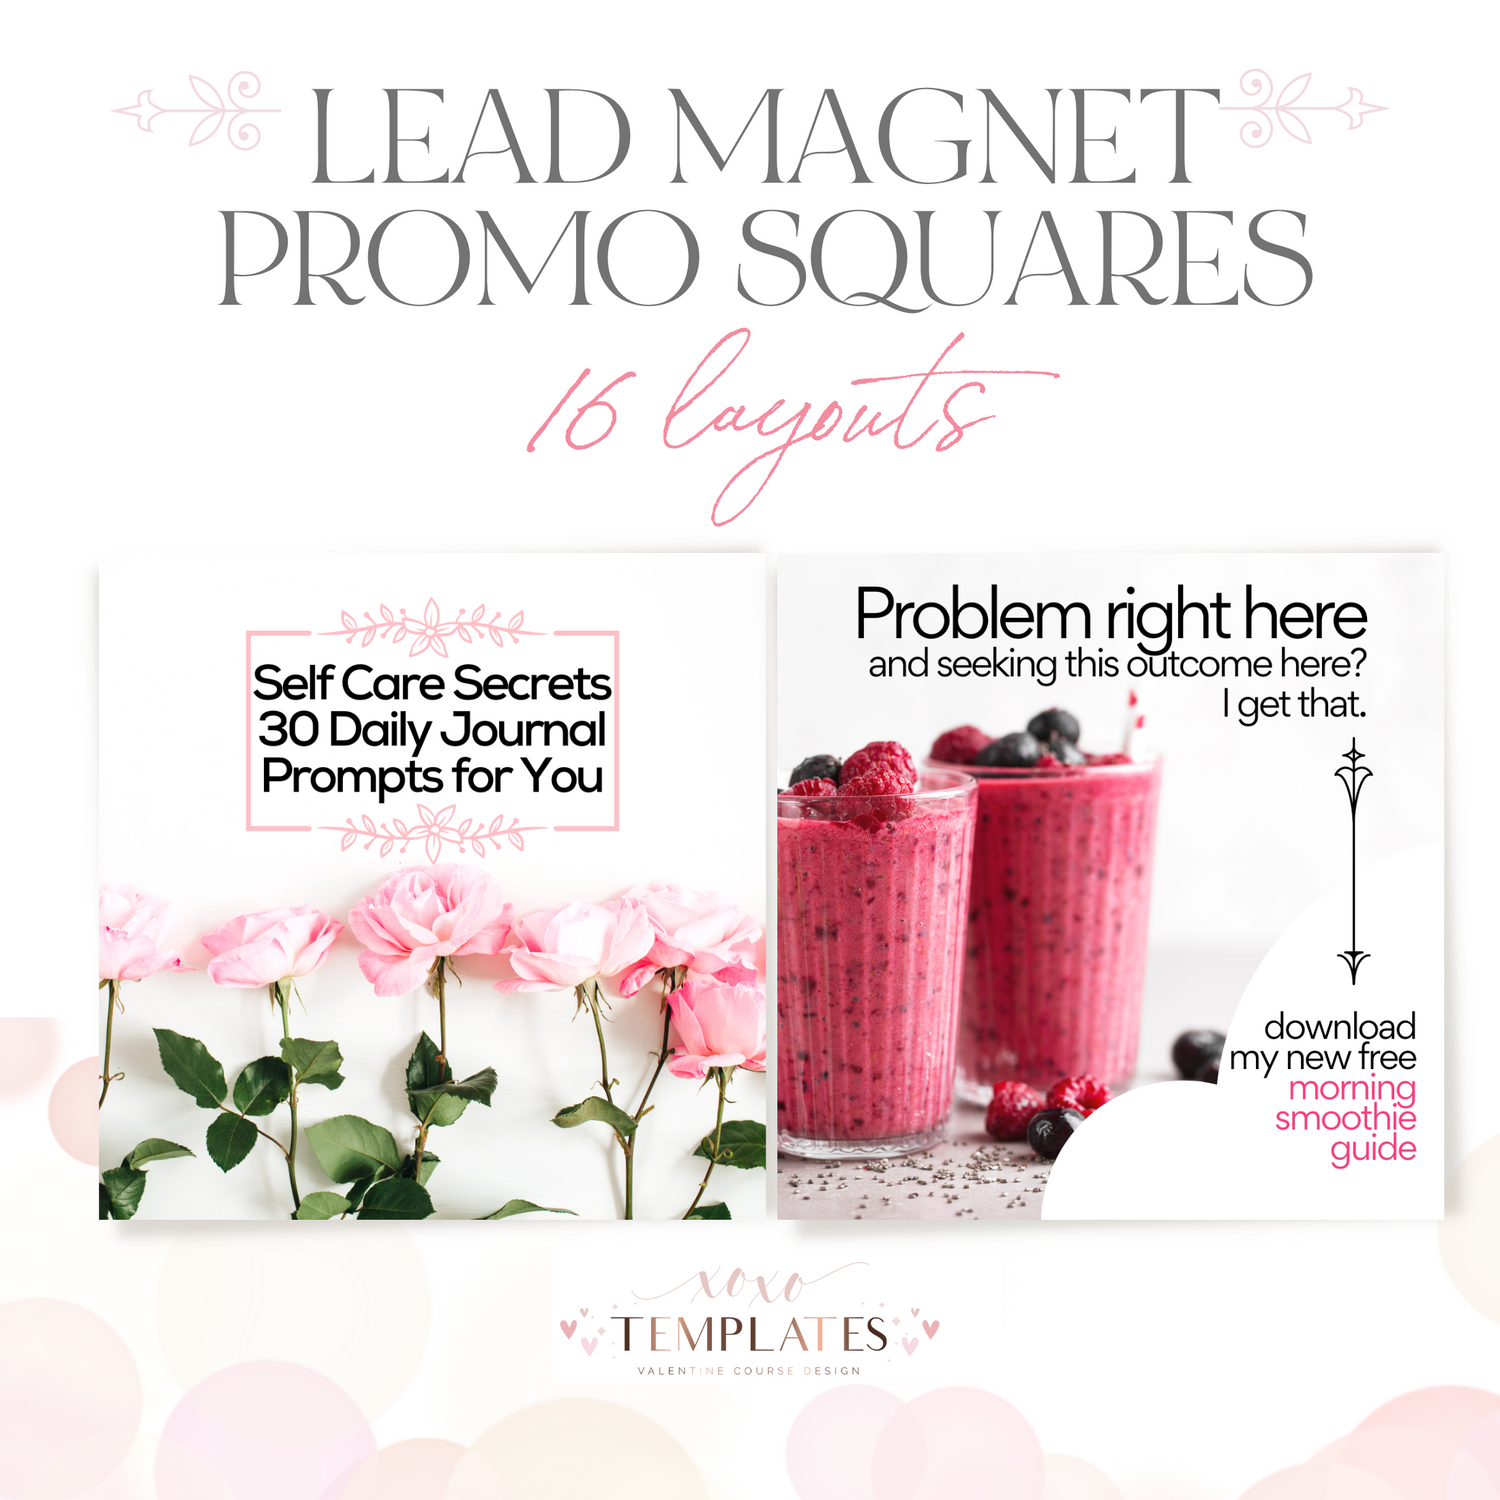 Lead Magnet Promo Squares